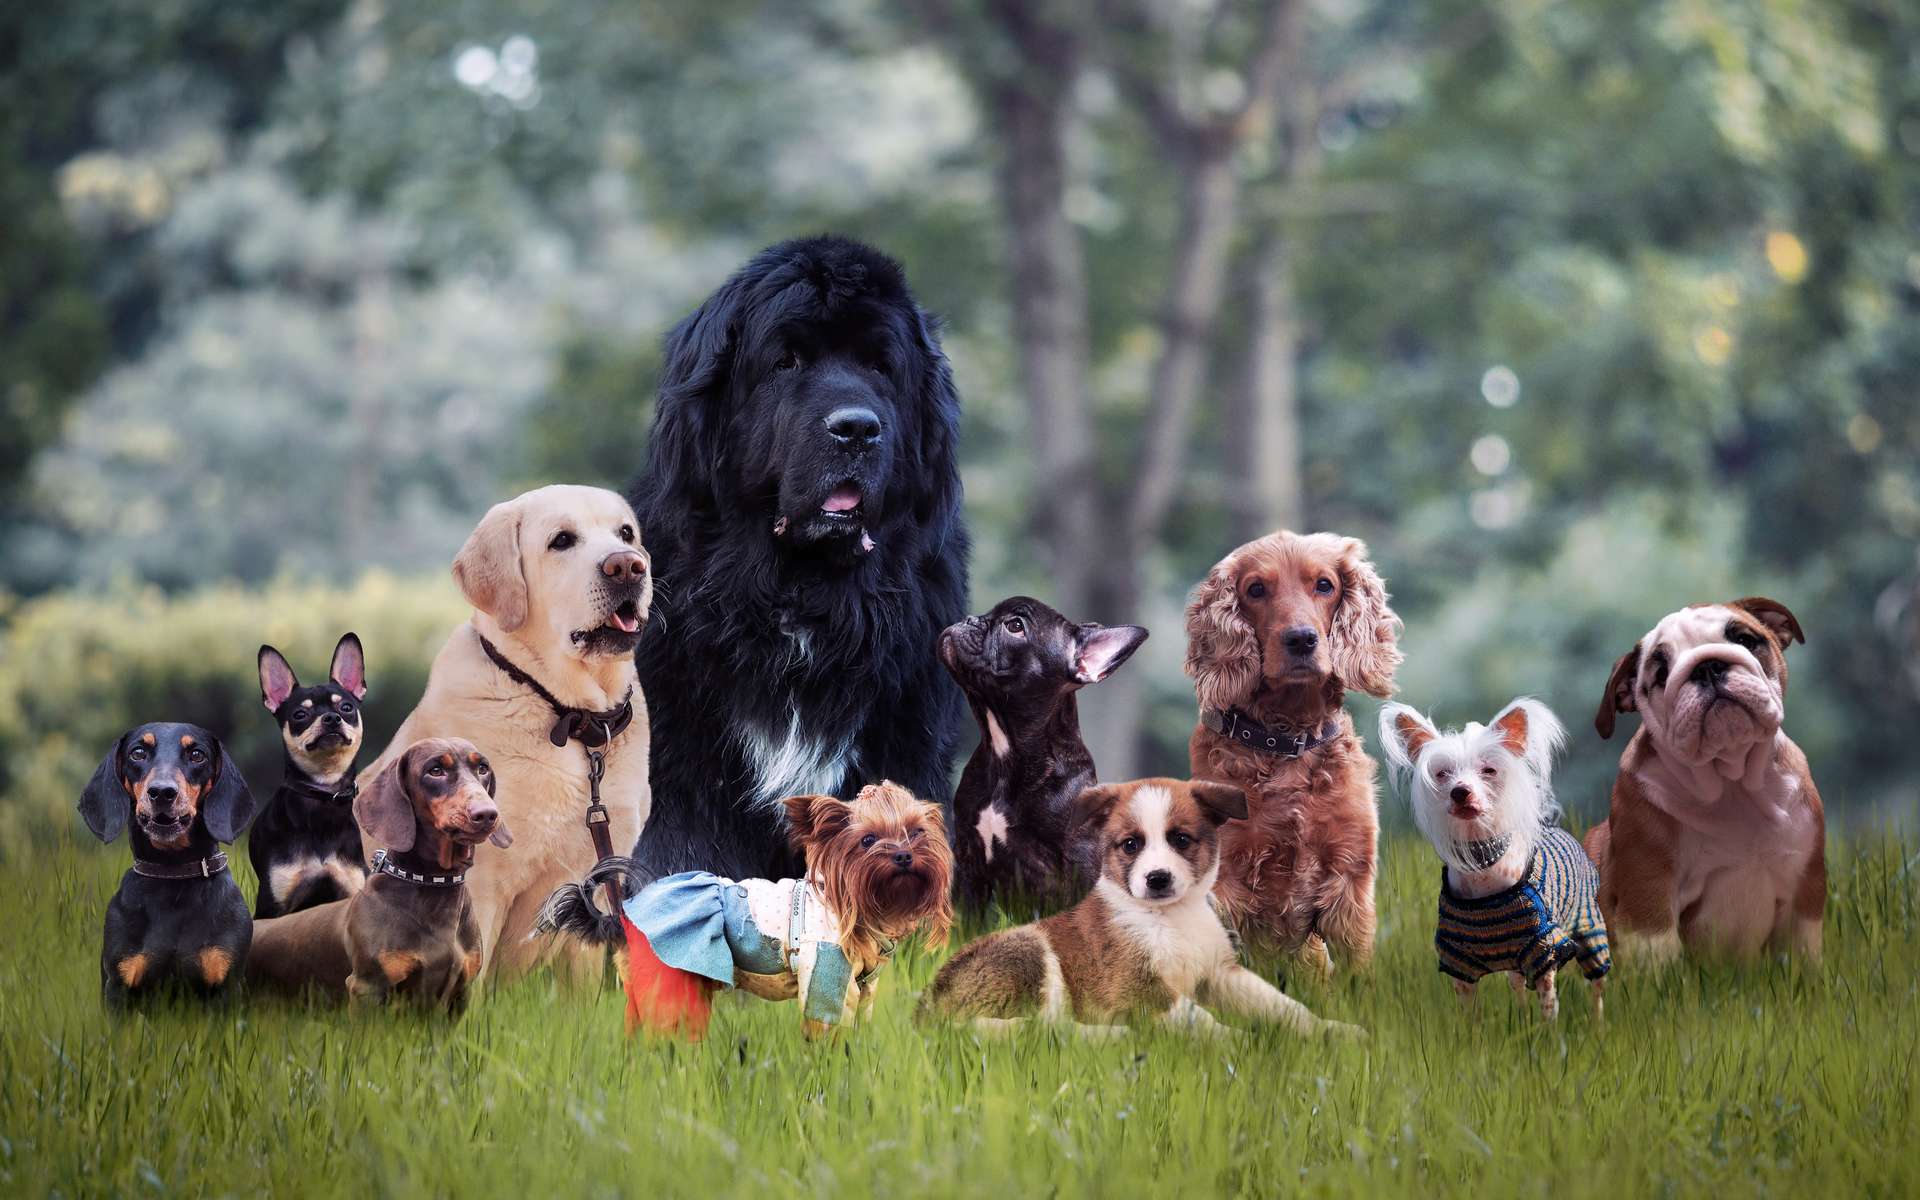 Les chiens de la préhistoire étaient-ils si différents des chiens actuels ? © kozorog, Adobe Stock